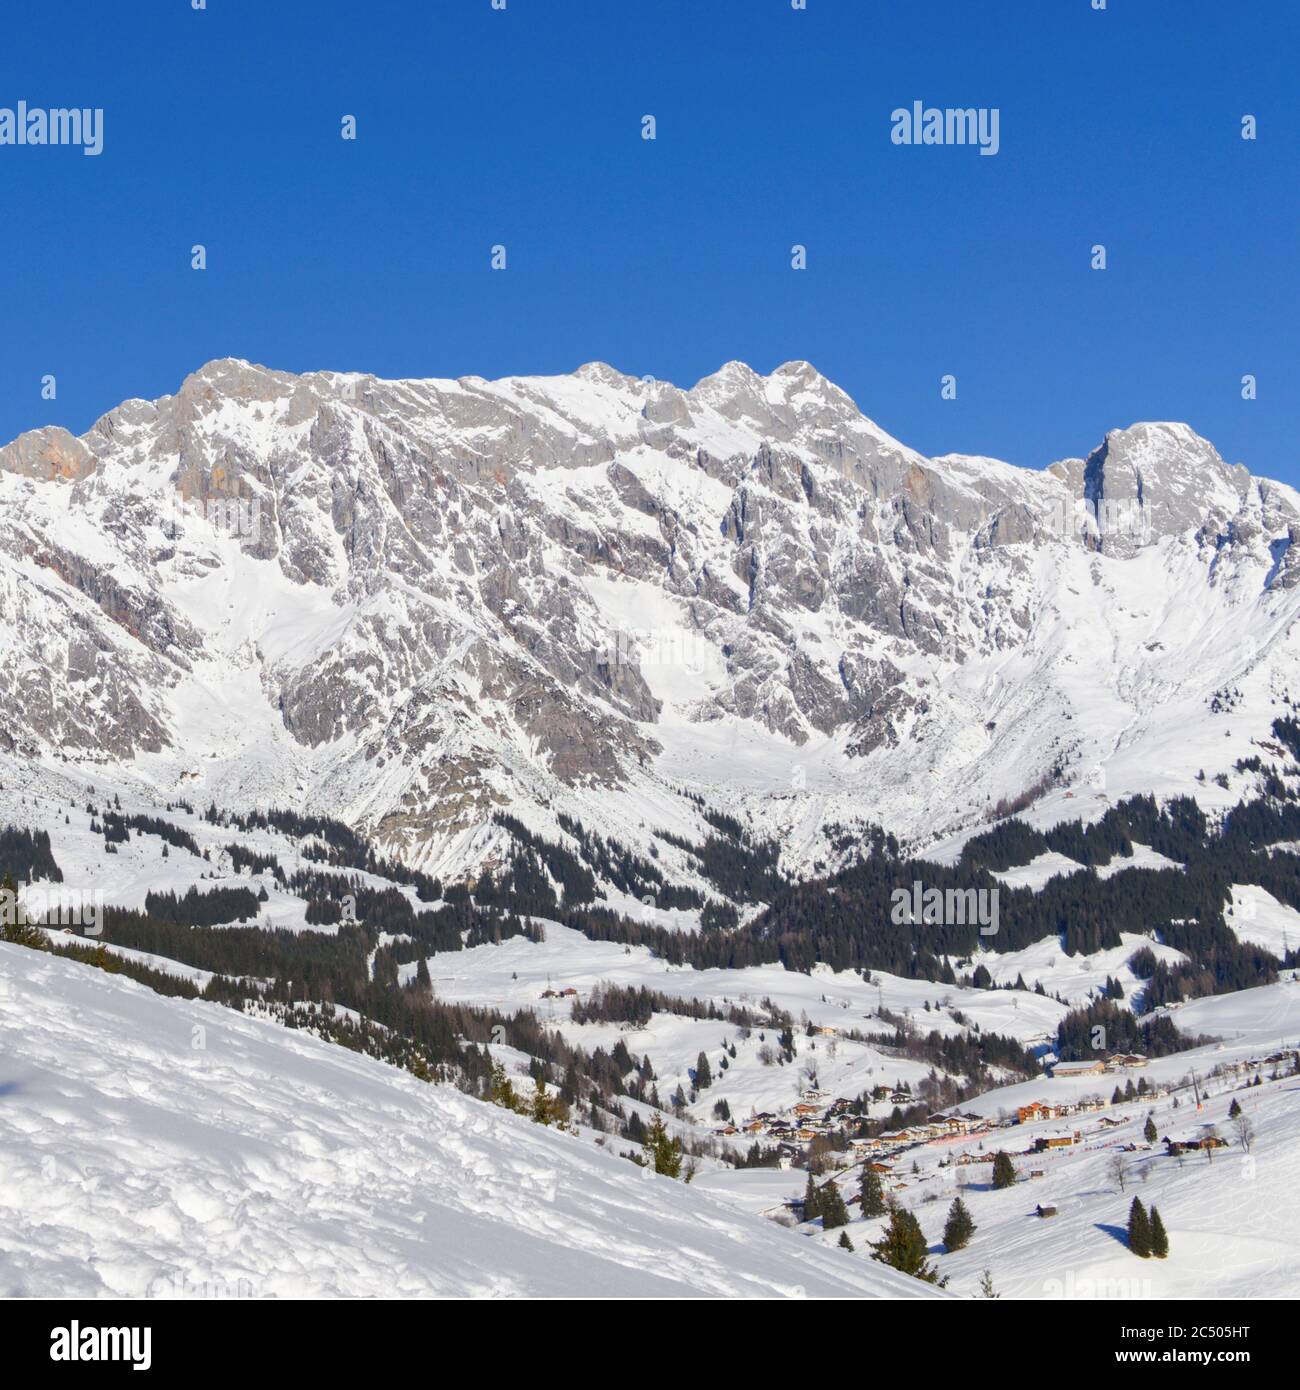 Snowy Mountain in Austria Stock Photo